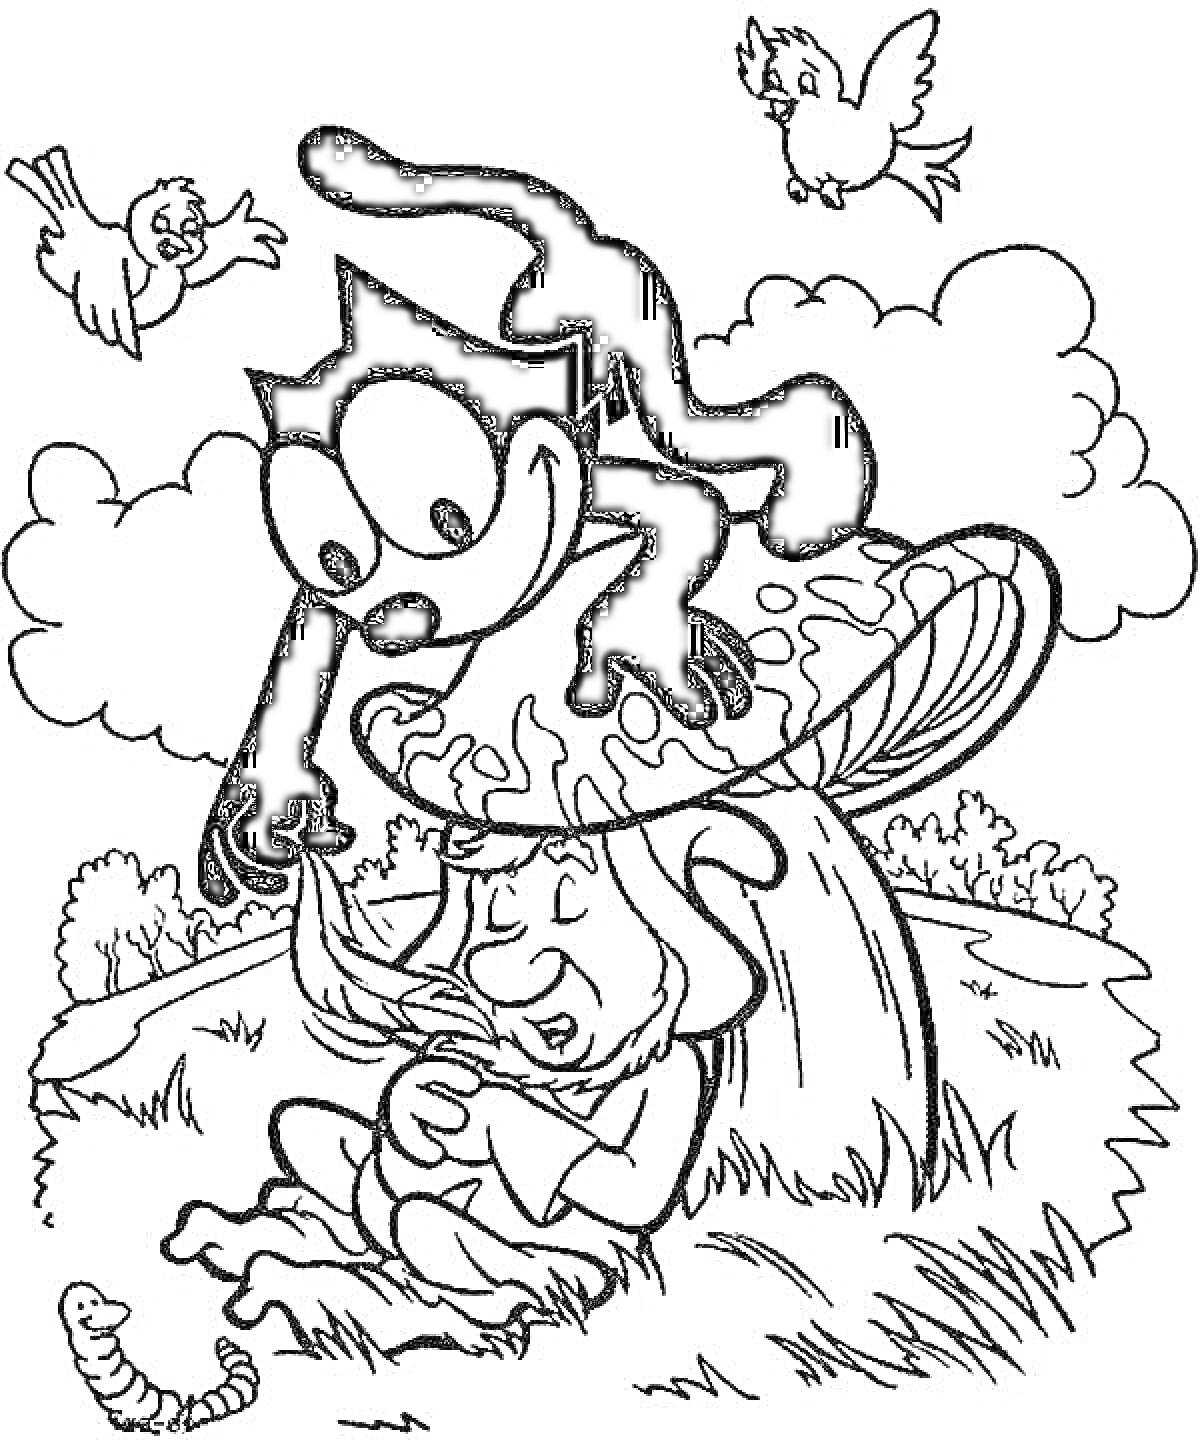 Раскраска Феликс, сидящий на грибке рядом с гномом и червяком, двое птиц и облака на заднем плане